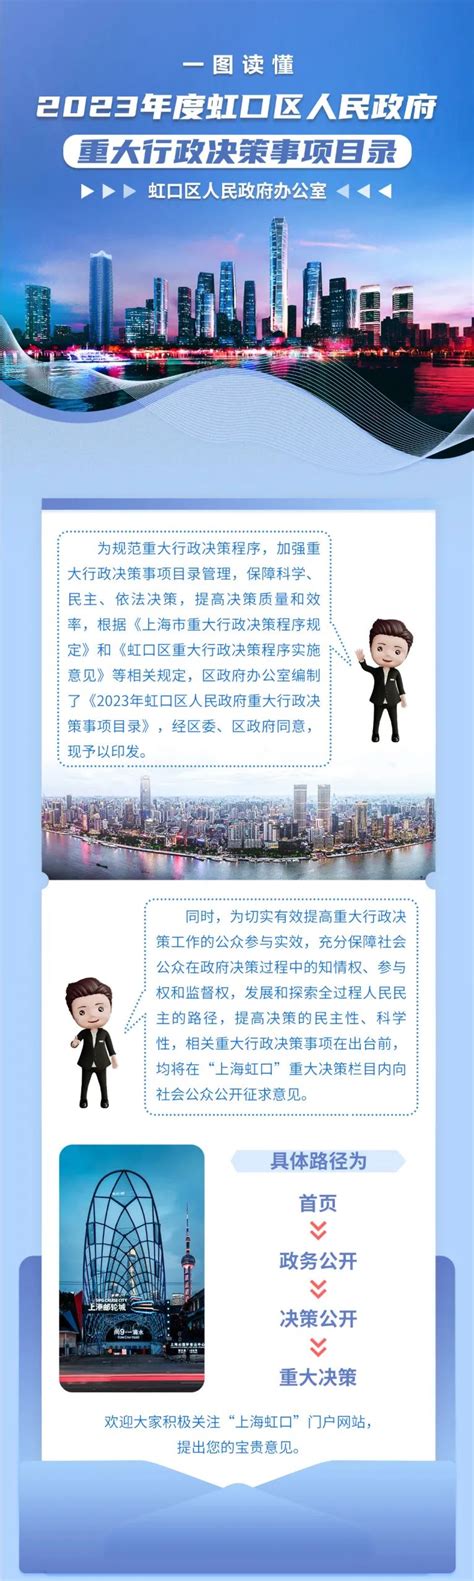 虹口区政府2023年度重大行政决策事项目录公布-上海市虹口区人民政府